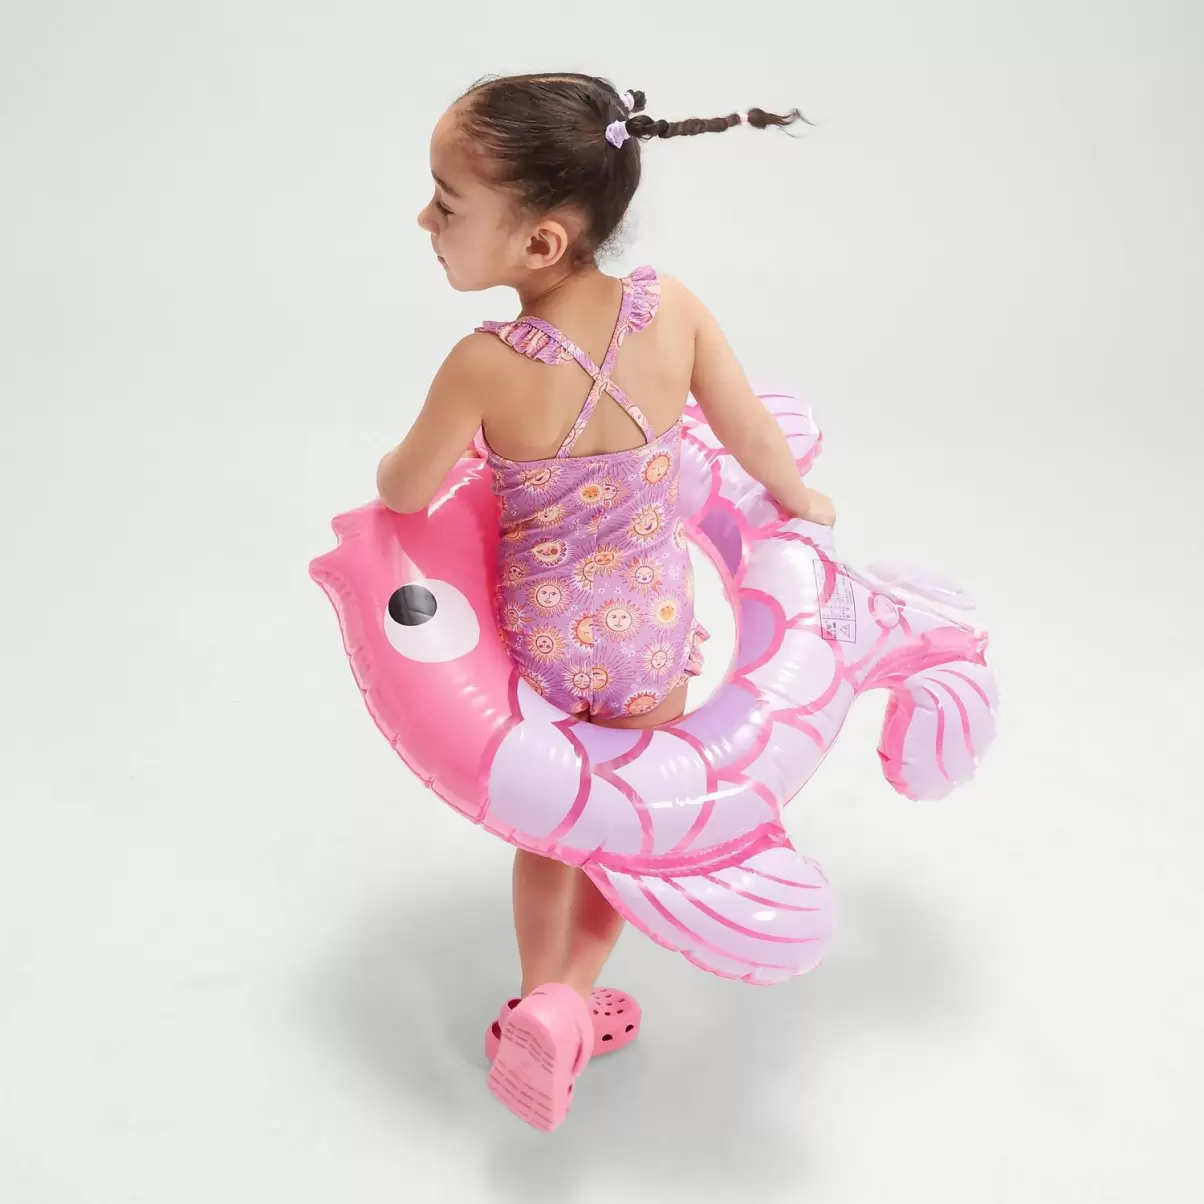 Kinder Mädchen Bademode Speedo Digital-Rüschen-Badeanzug Mit Dünnen Trägern Für Mädchen Im Kleinkindalter Violett/Pink - 2